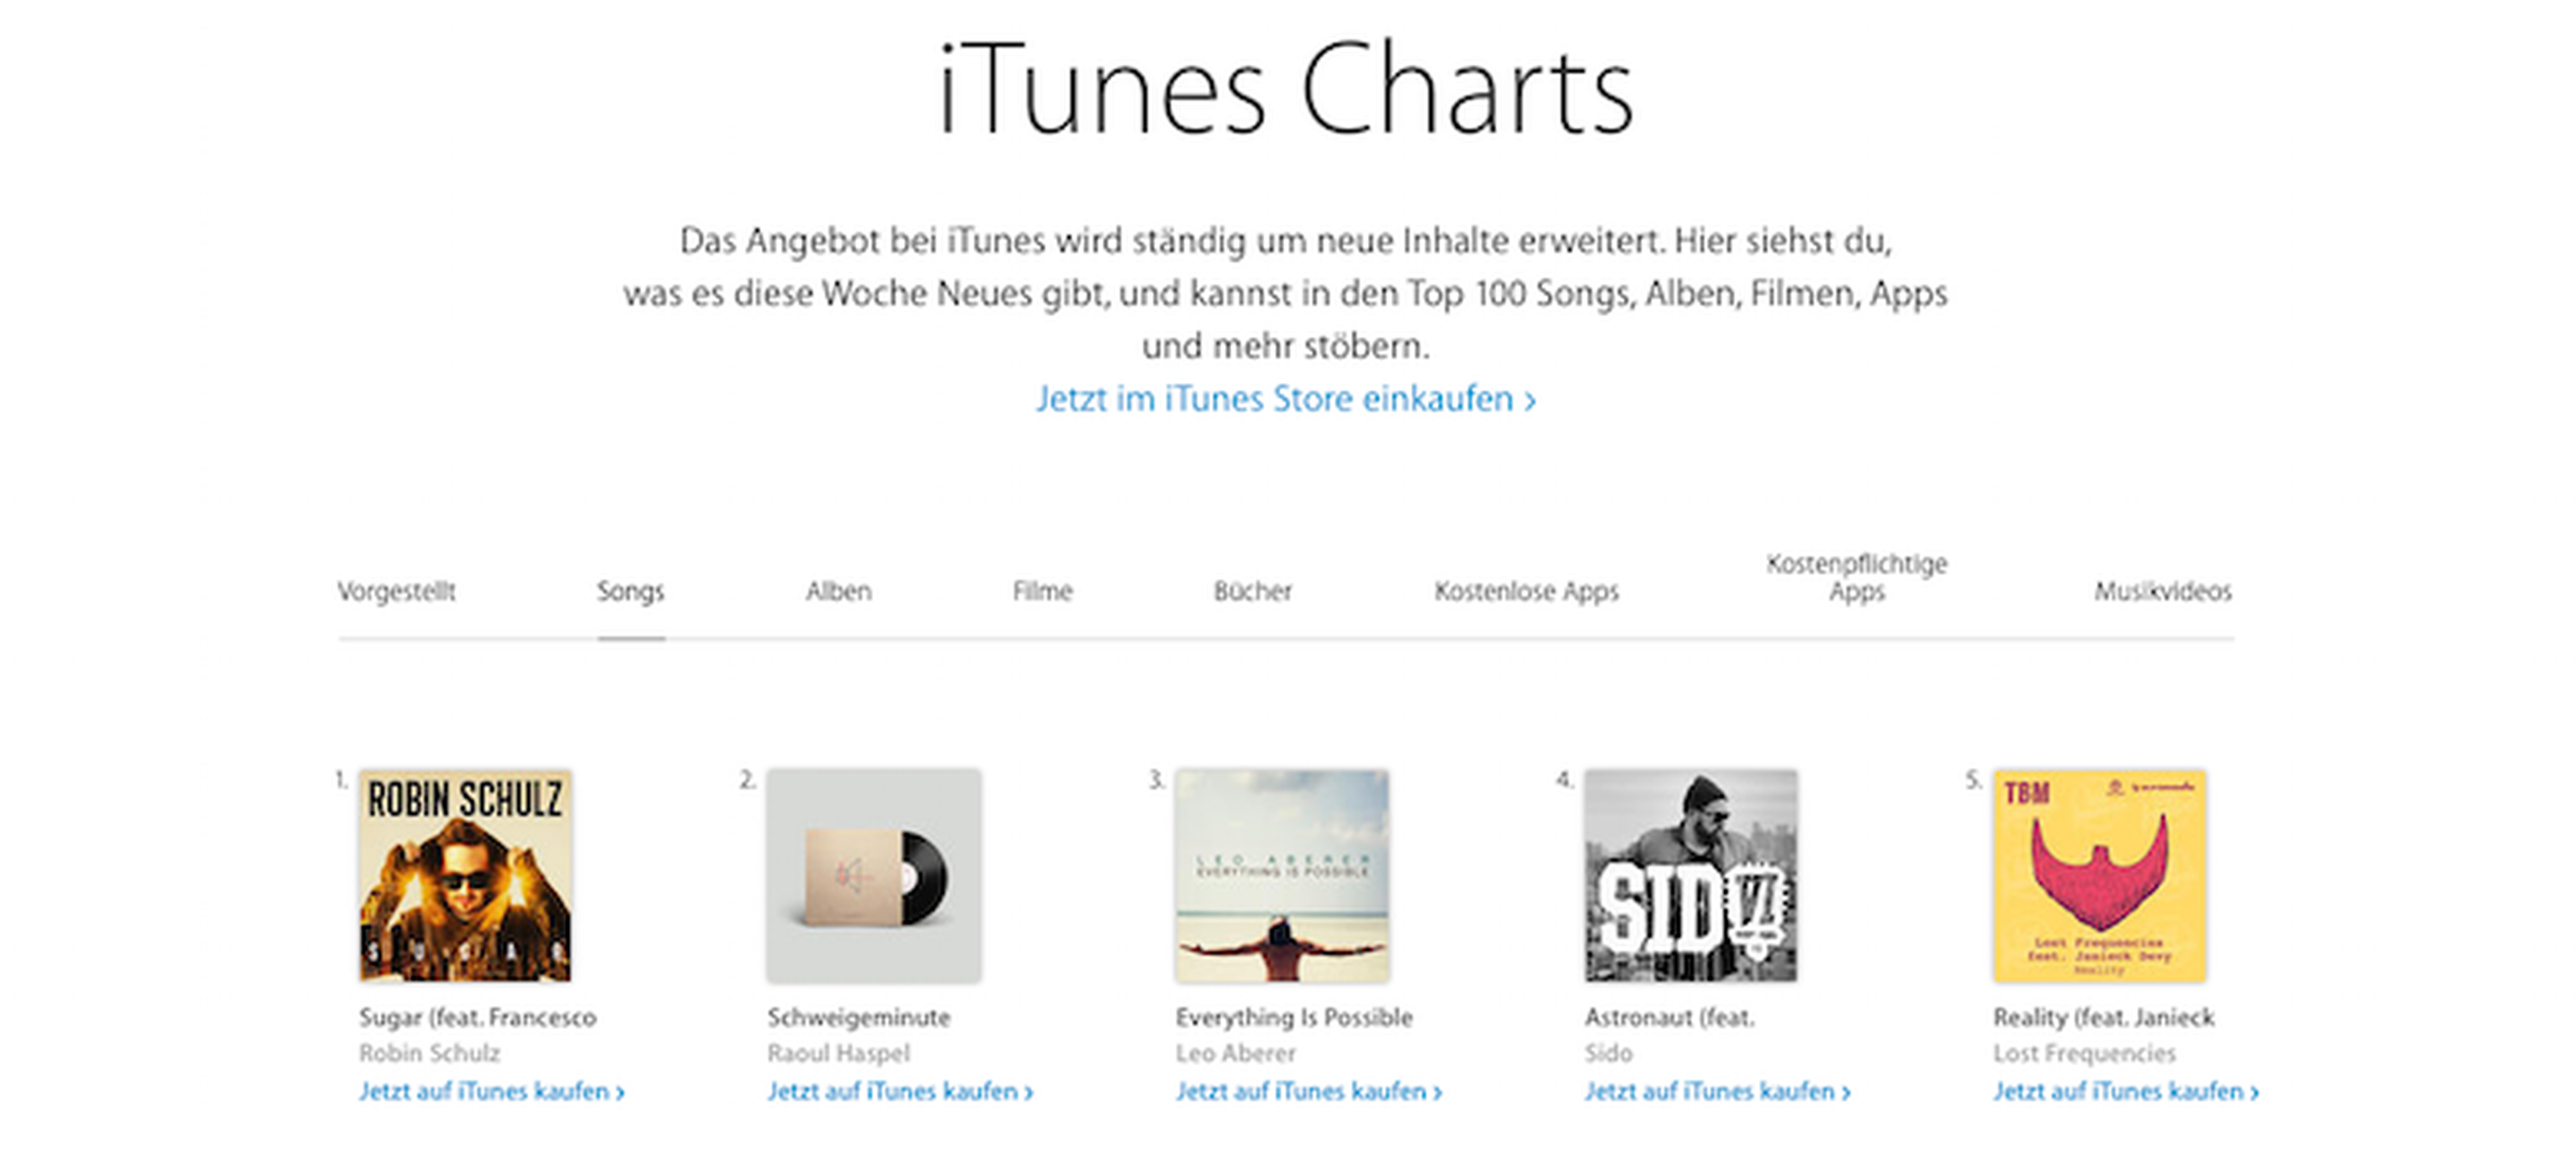 Y el nuevo éxito musical de iTunes es... Un minuto de silencio